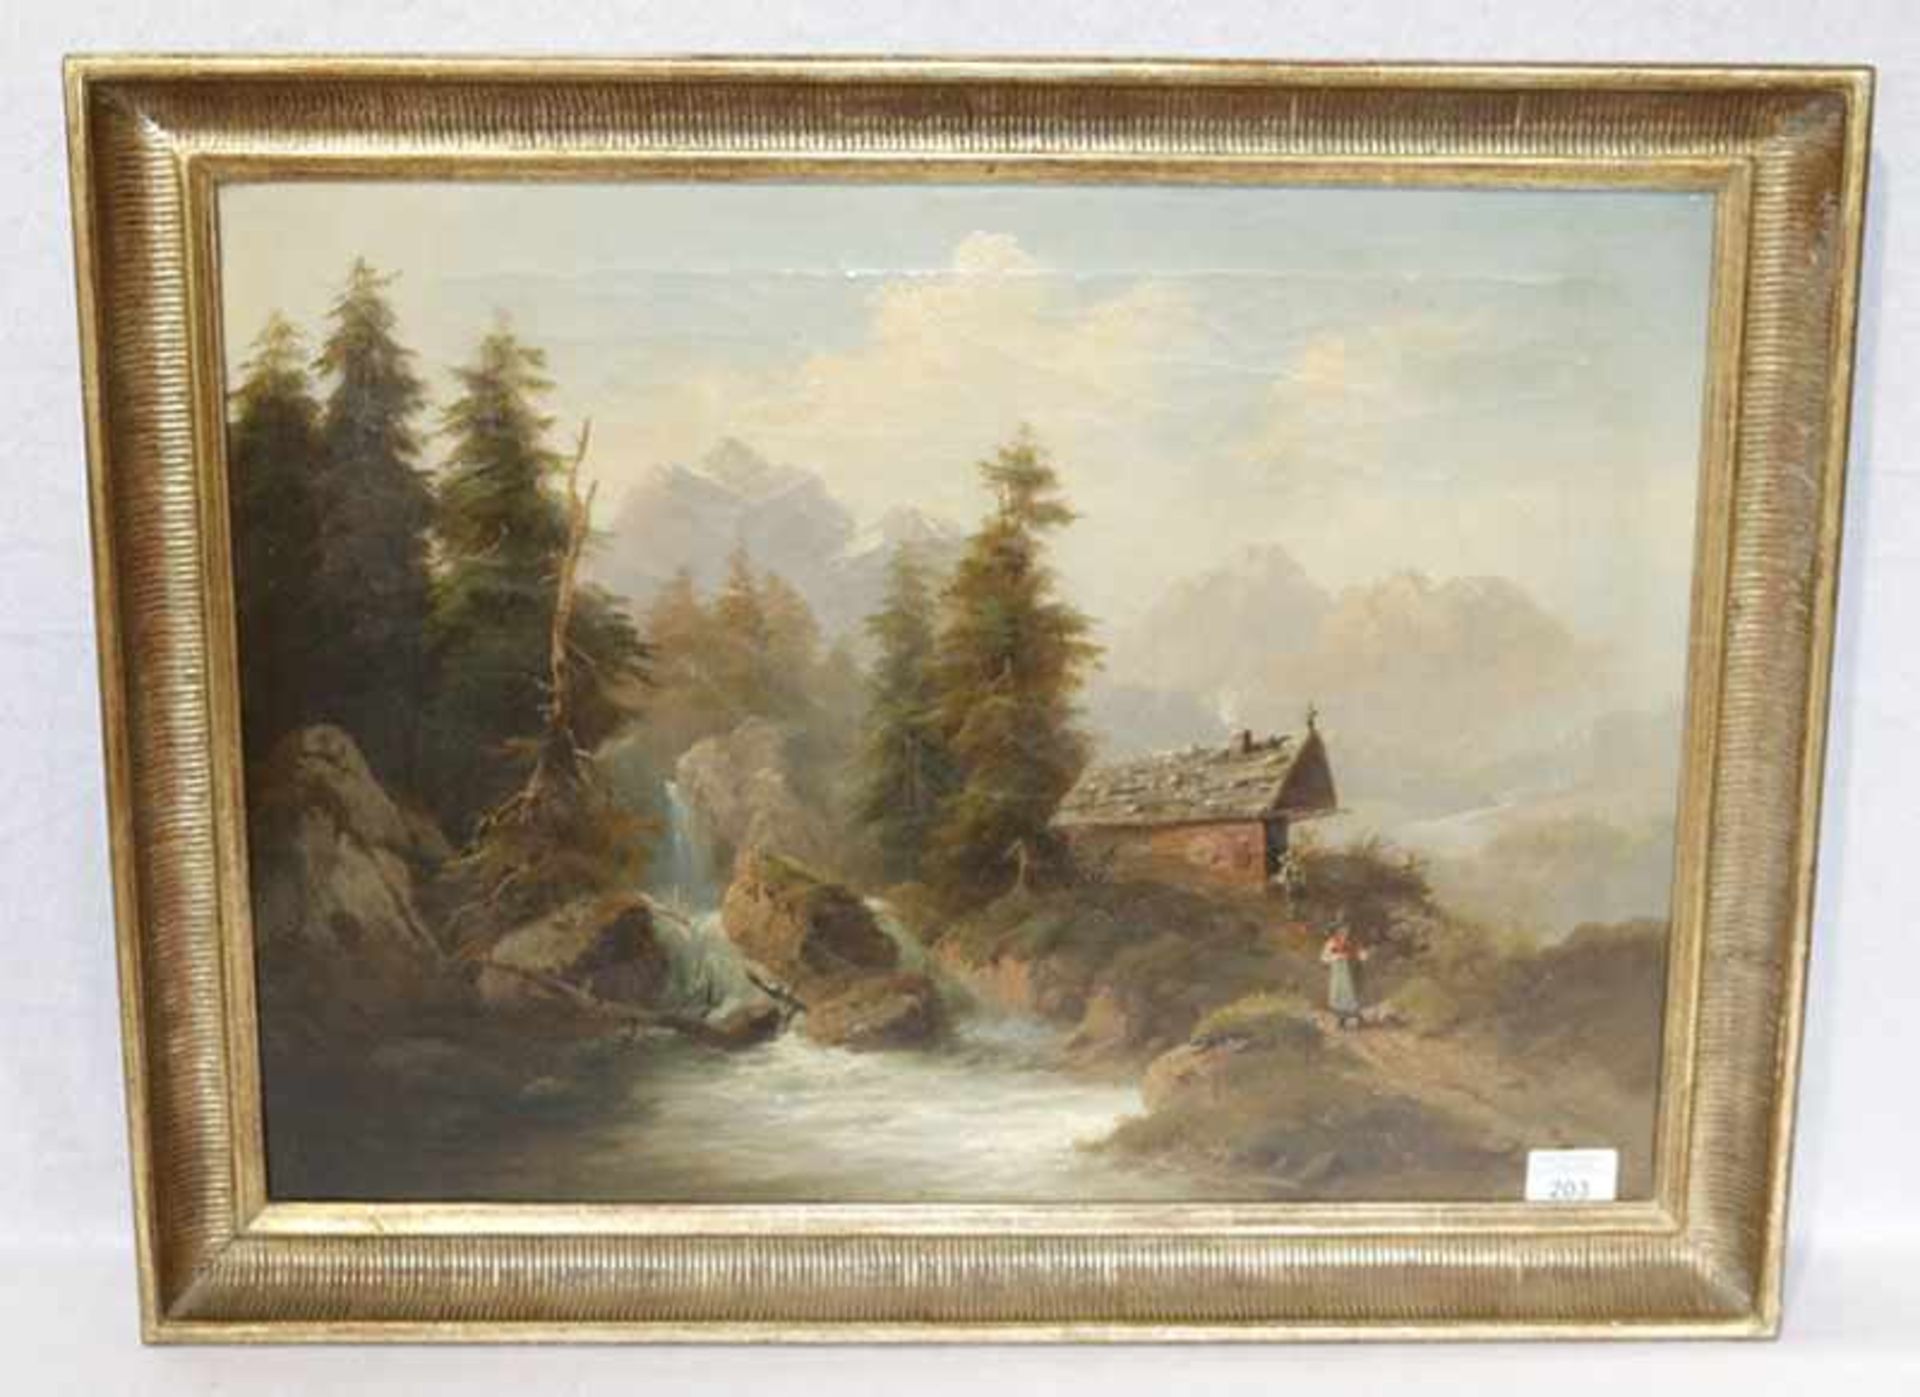 Gemälde ÖL/LW 'Romantische Landschafts-Szenerie mit Wildbach', fein bemalt, 19. Jahrhundert,